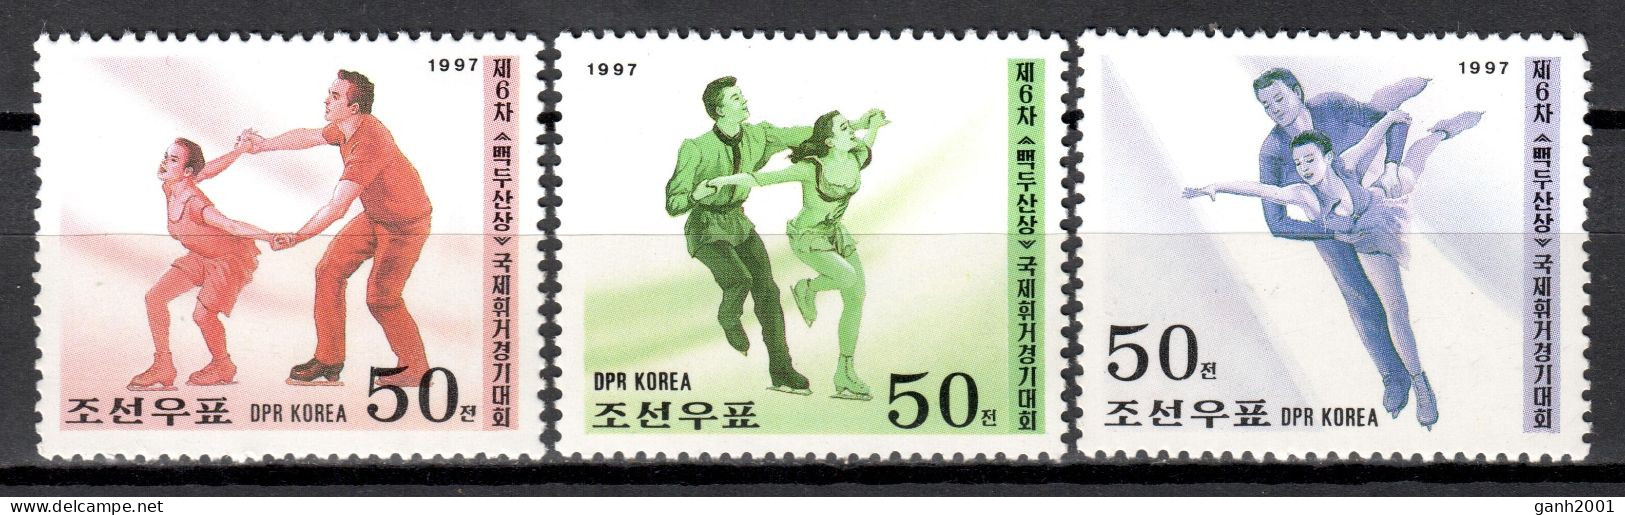 Korea North 1997 Corea / Figure Skating MNH Patinaje Artístico / Lx34  34-2 - Eiskunstlauf